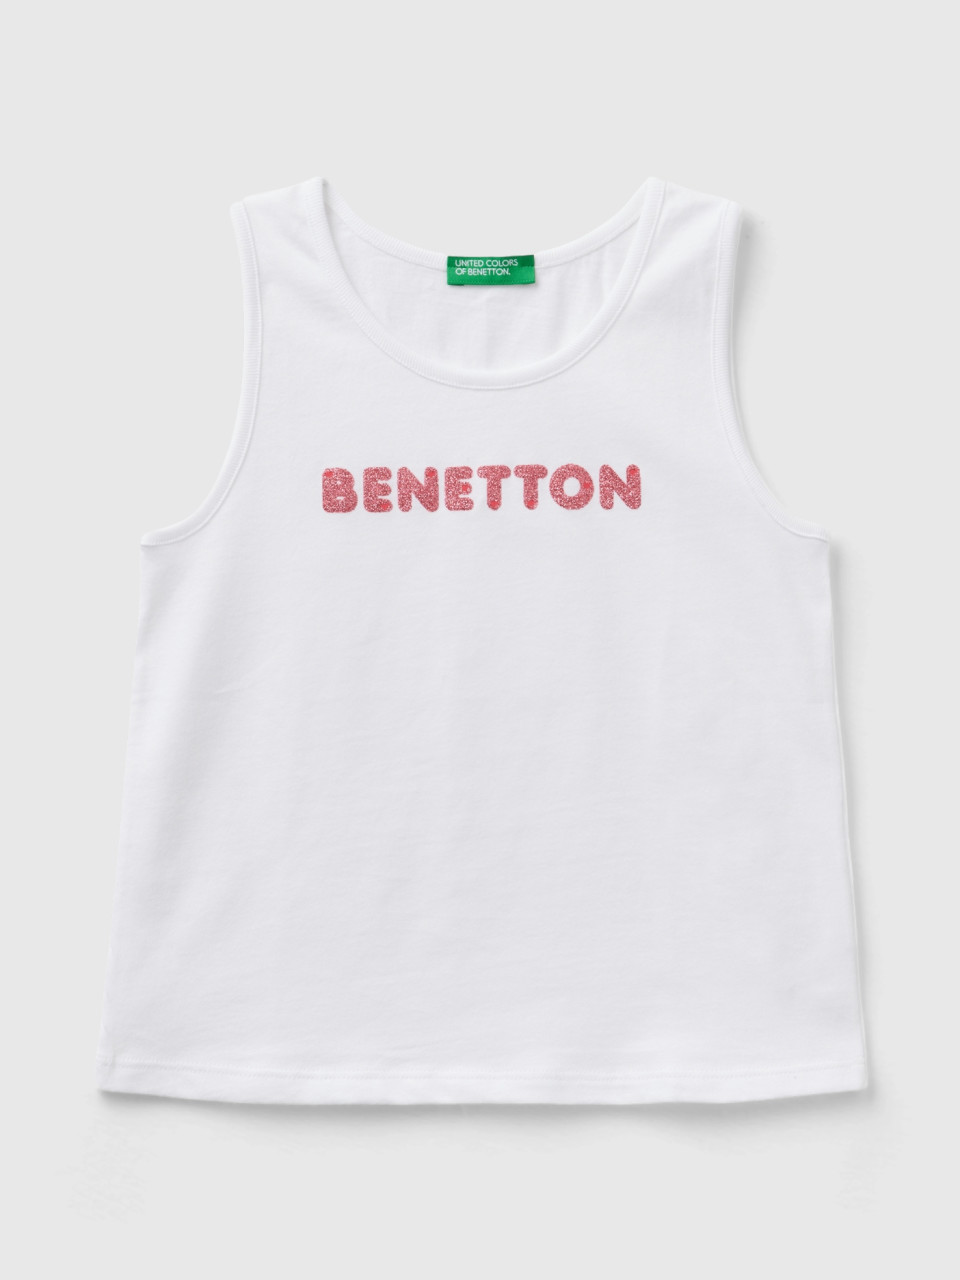 Benetton, Trägertop Mit Logo, größe 104, Weiss